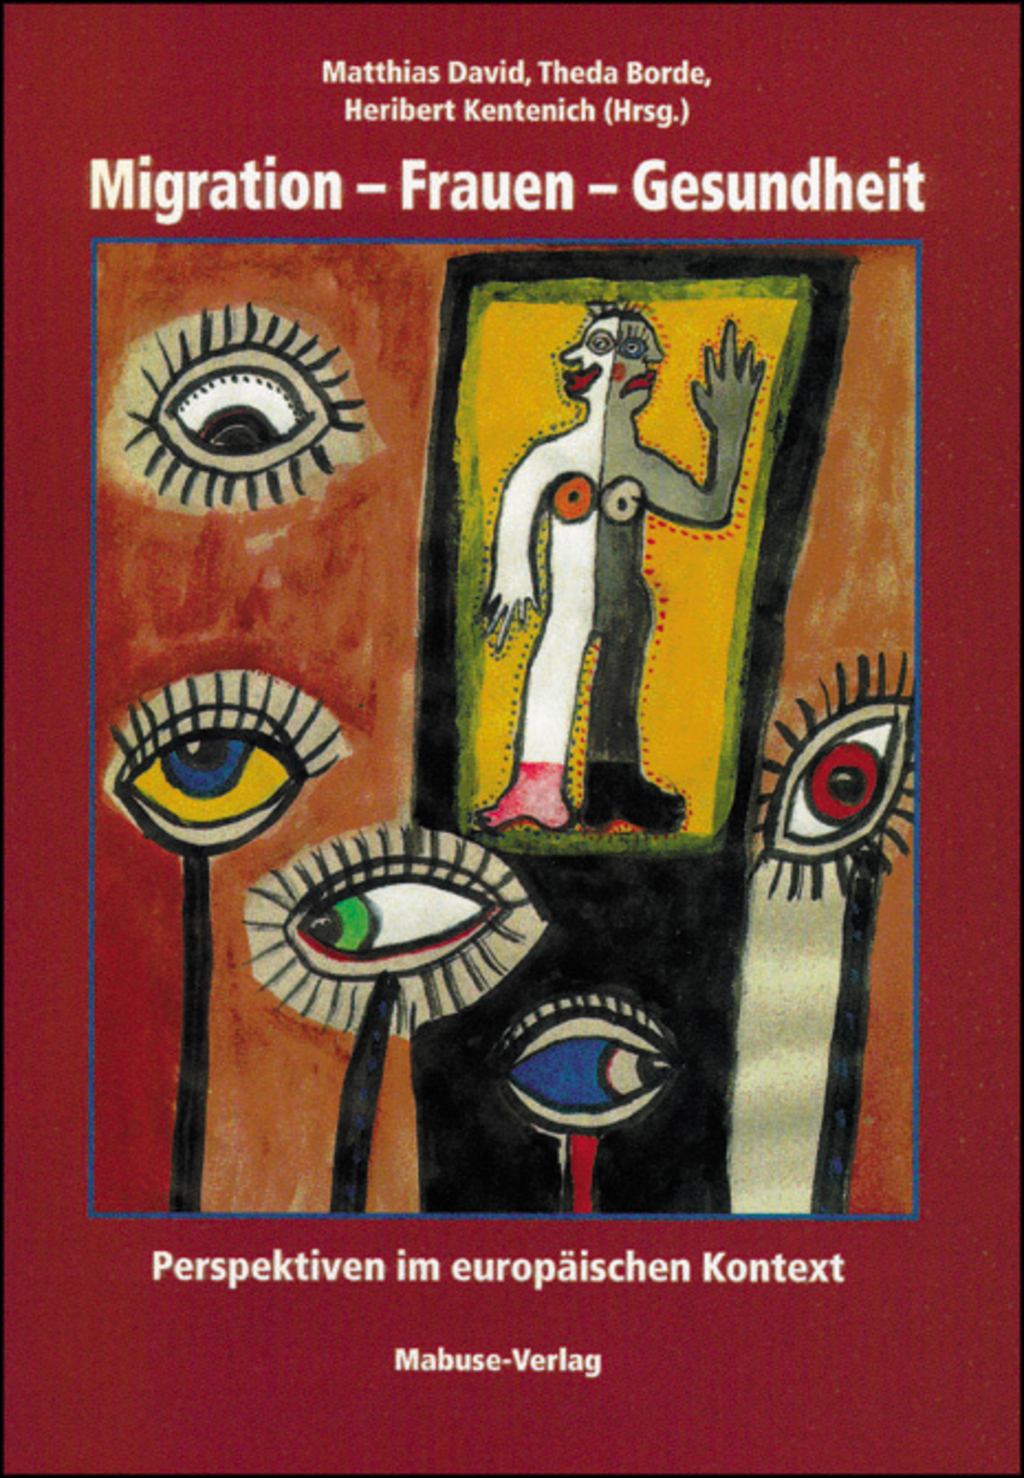 Buchcover mit gemalten Augen und einer abstrakten Frauenfigur